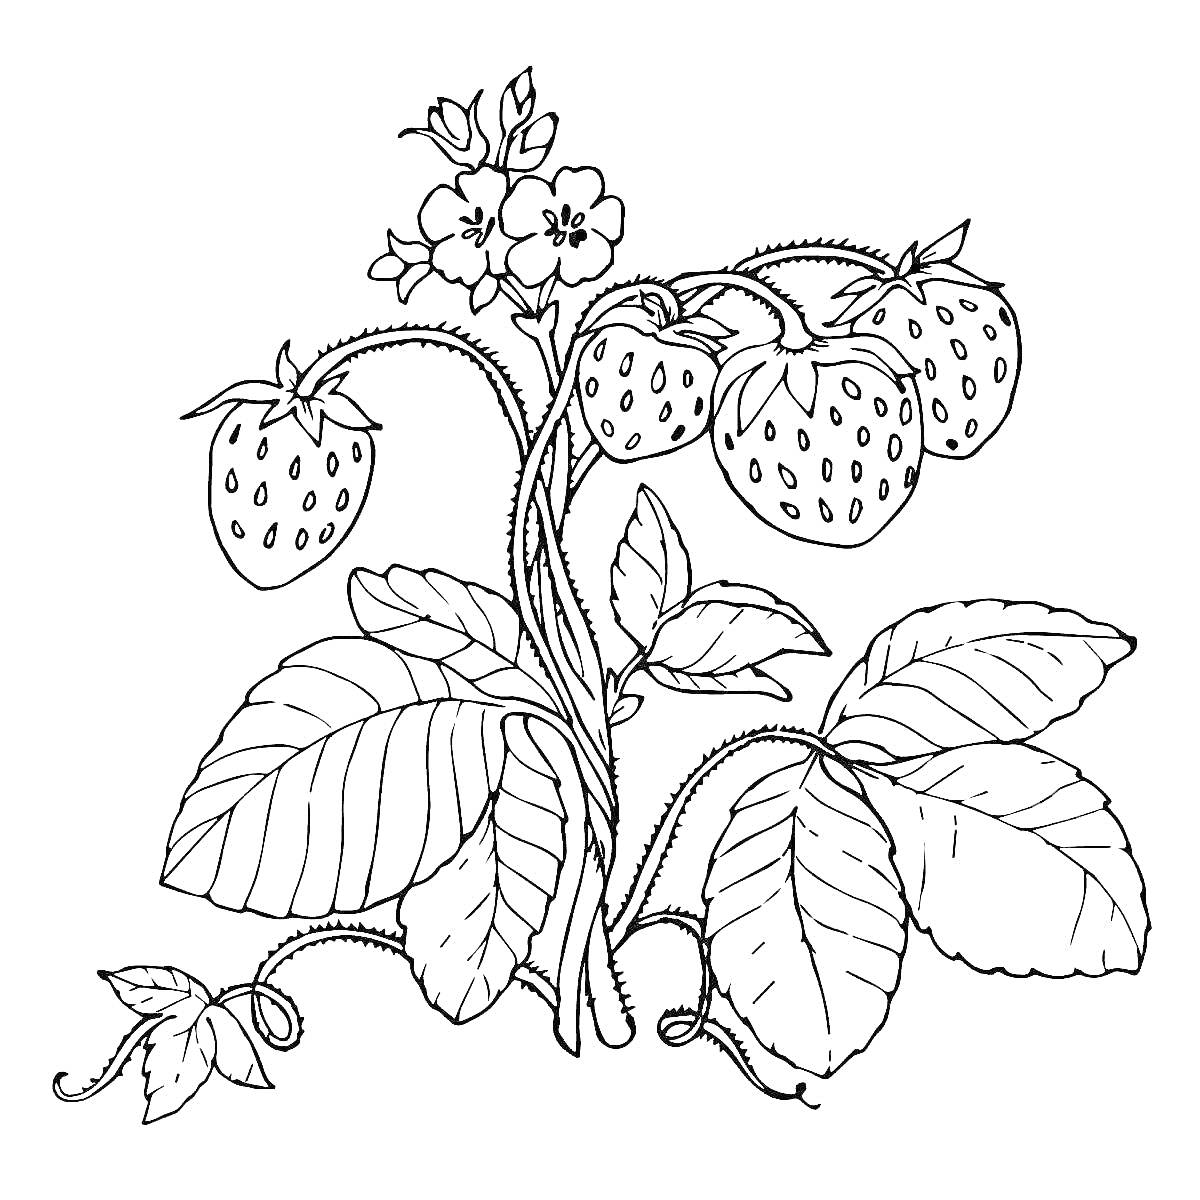 Раскраска Земляника с ягодами, цветами и листьями